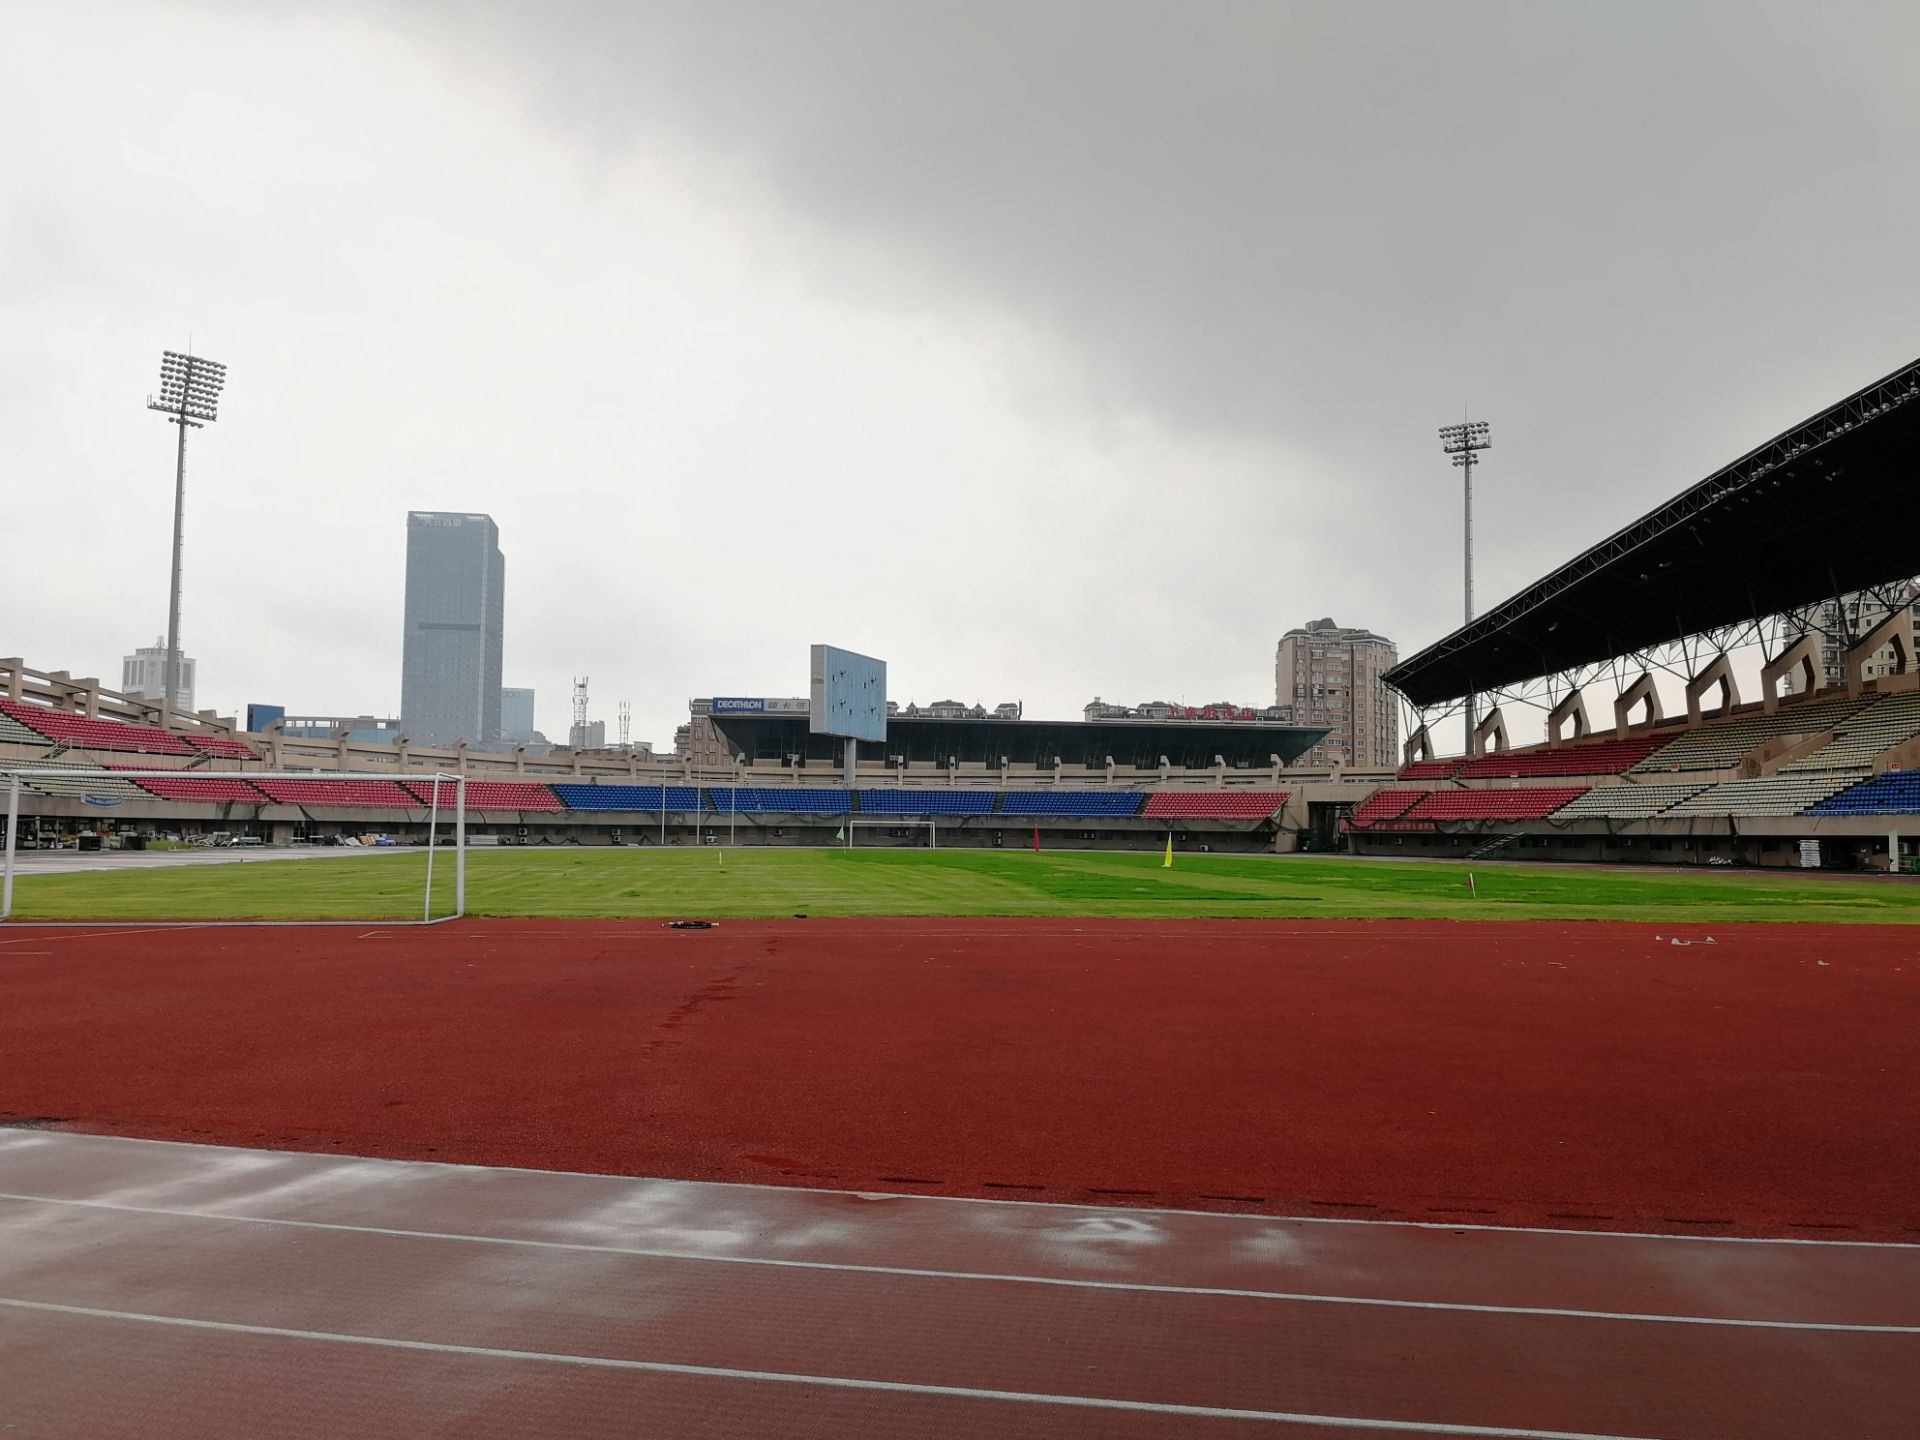 湘潭体育中心图片